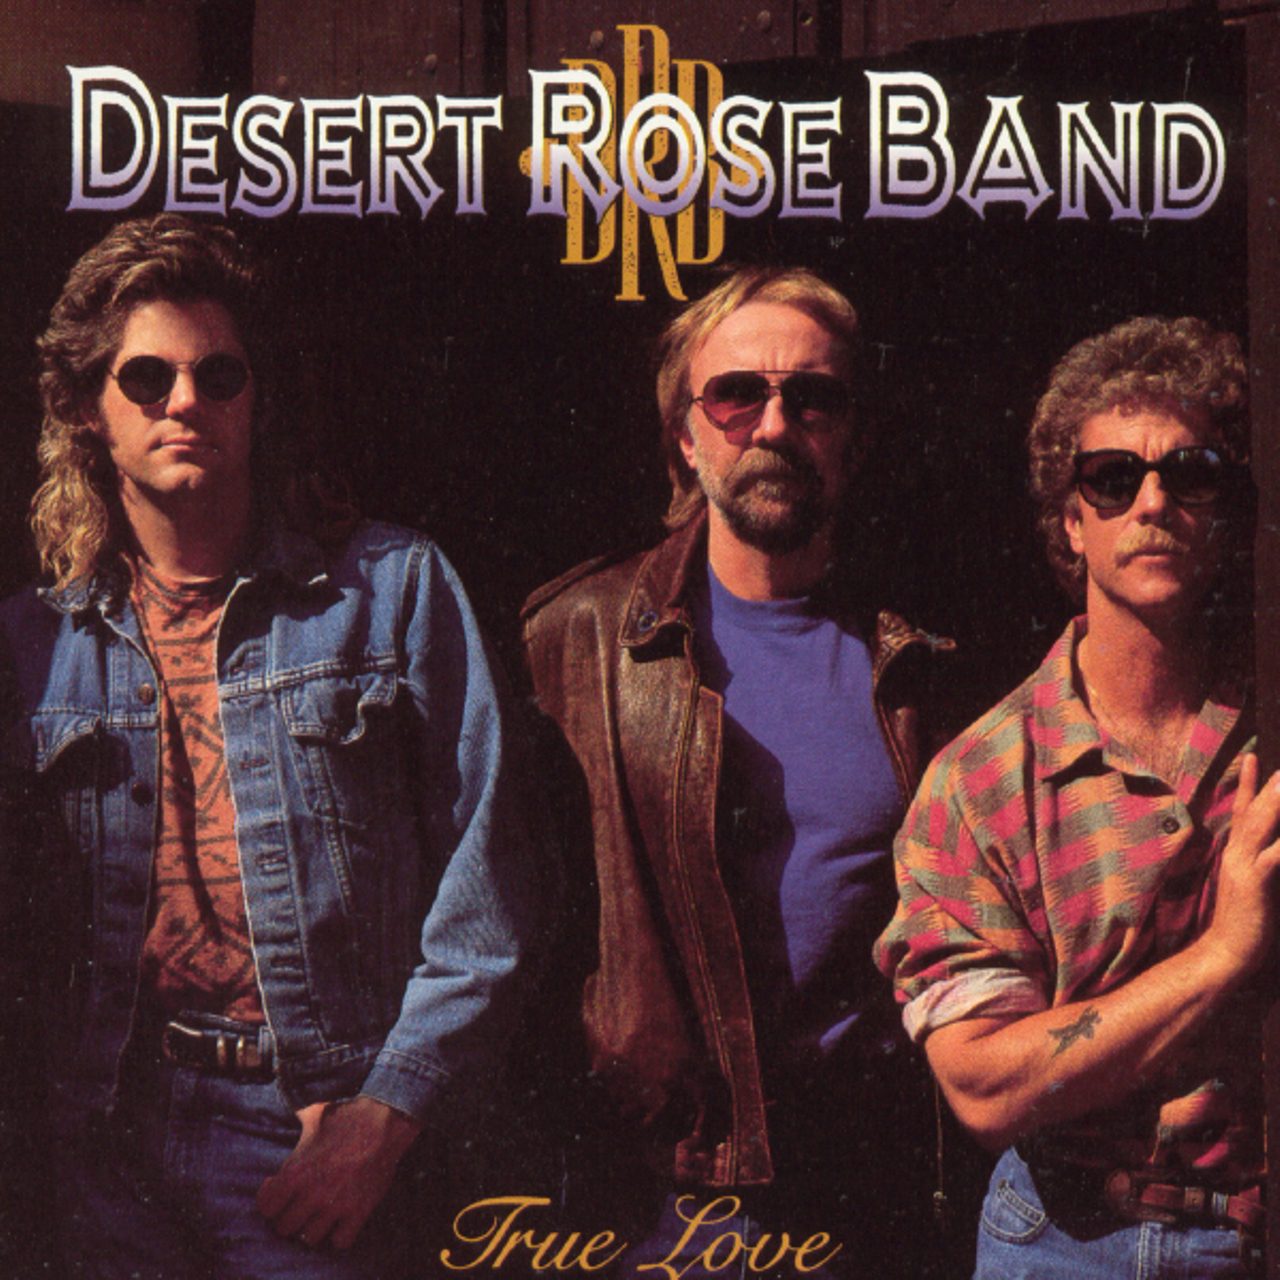 Desert Rose Band – True Love cover album